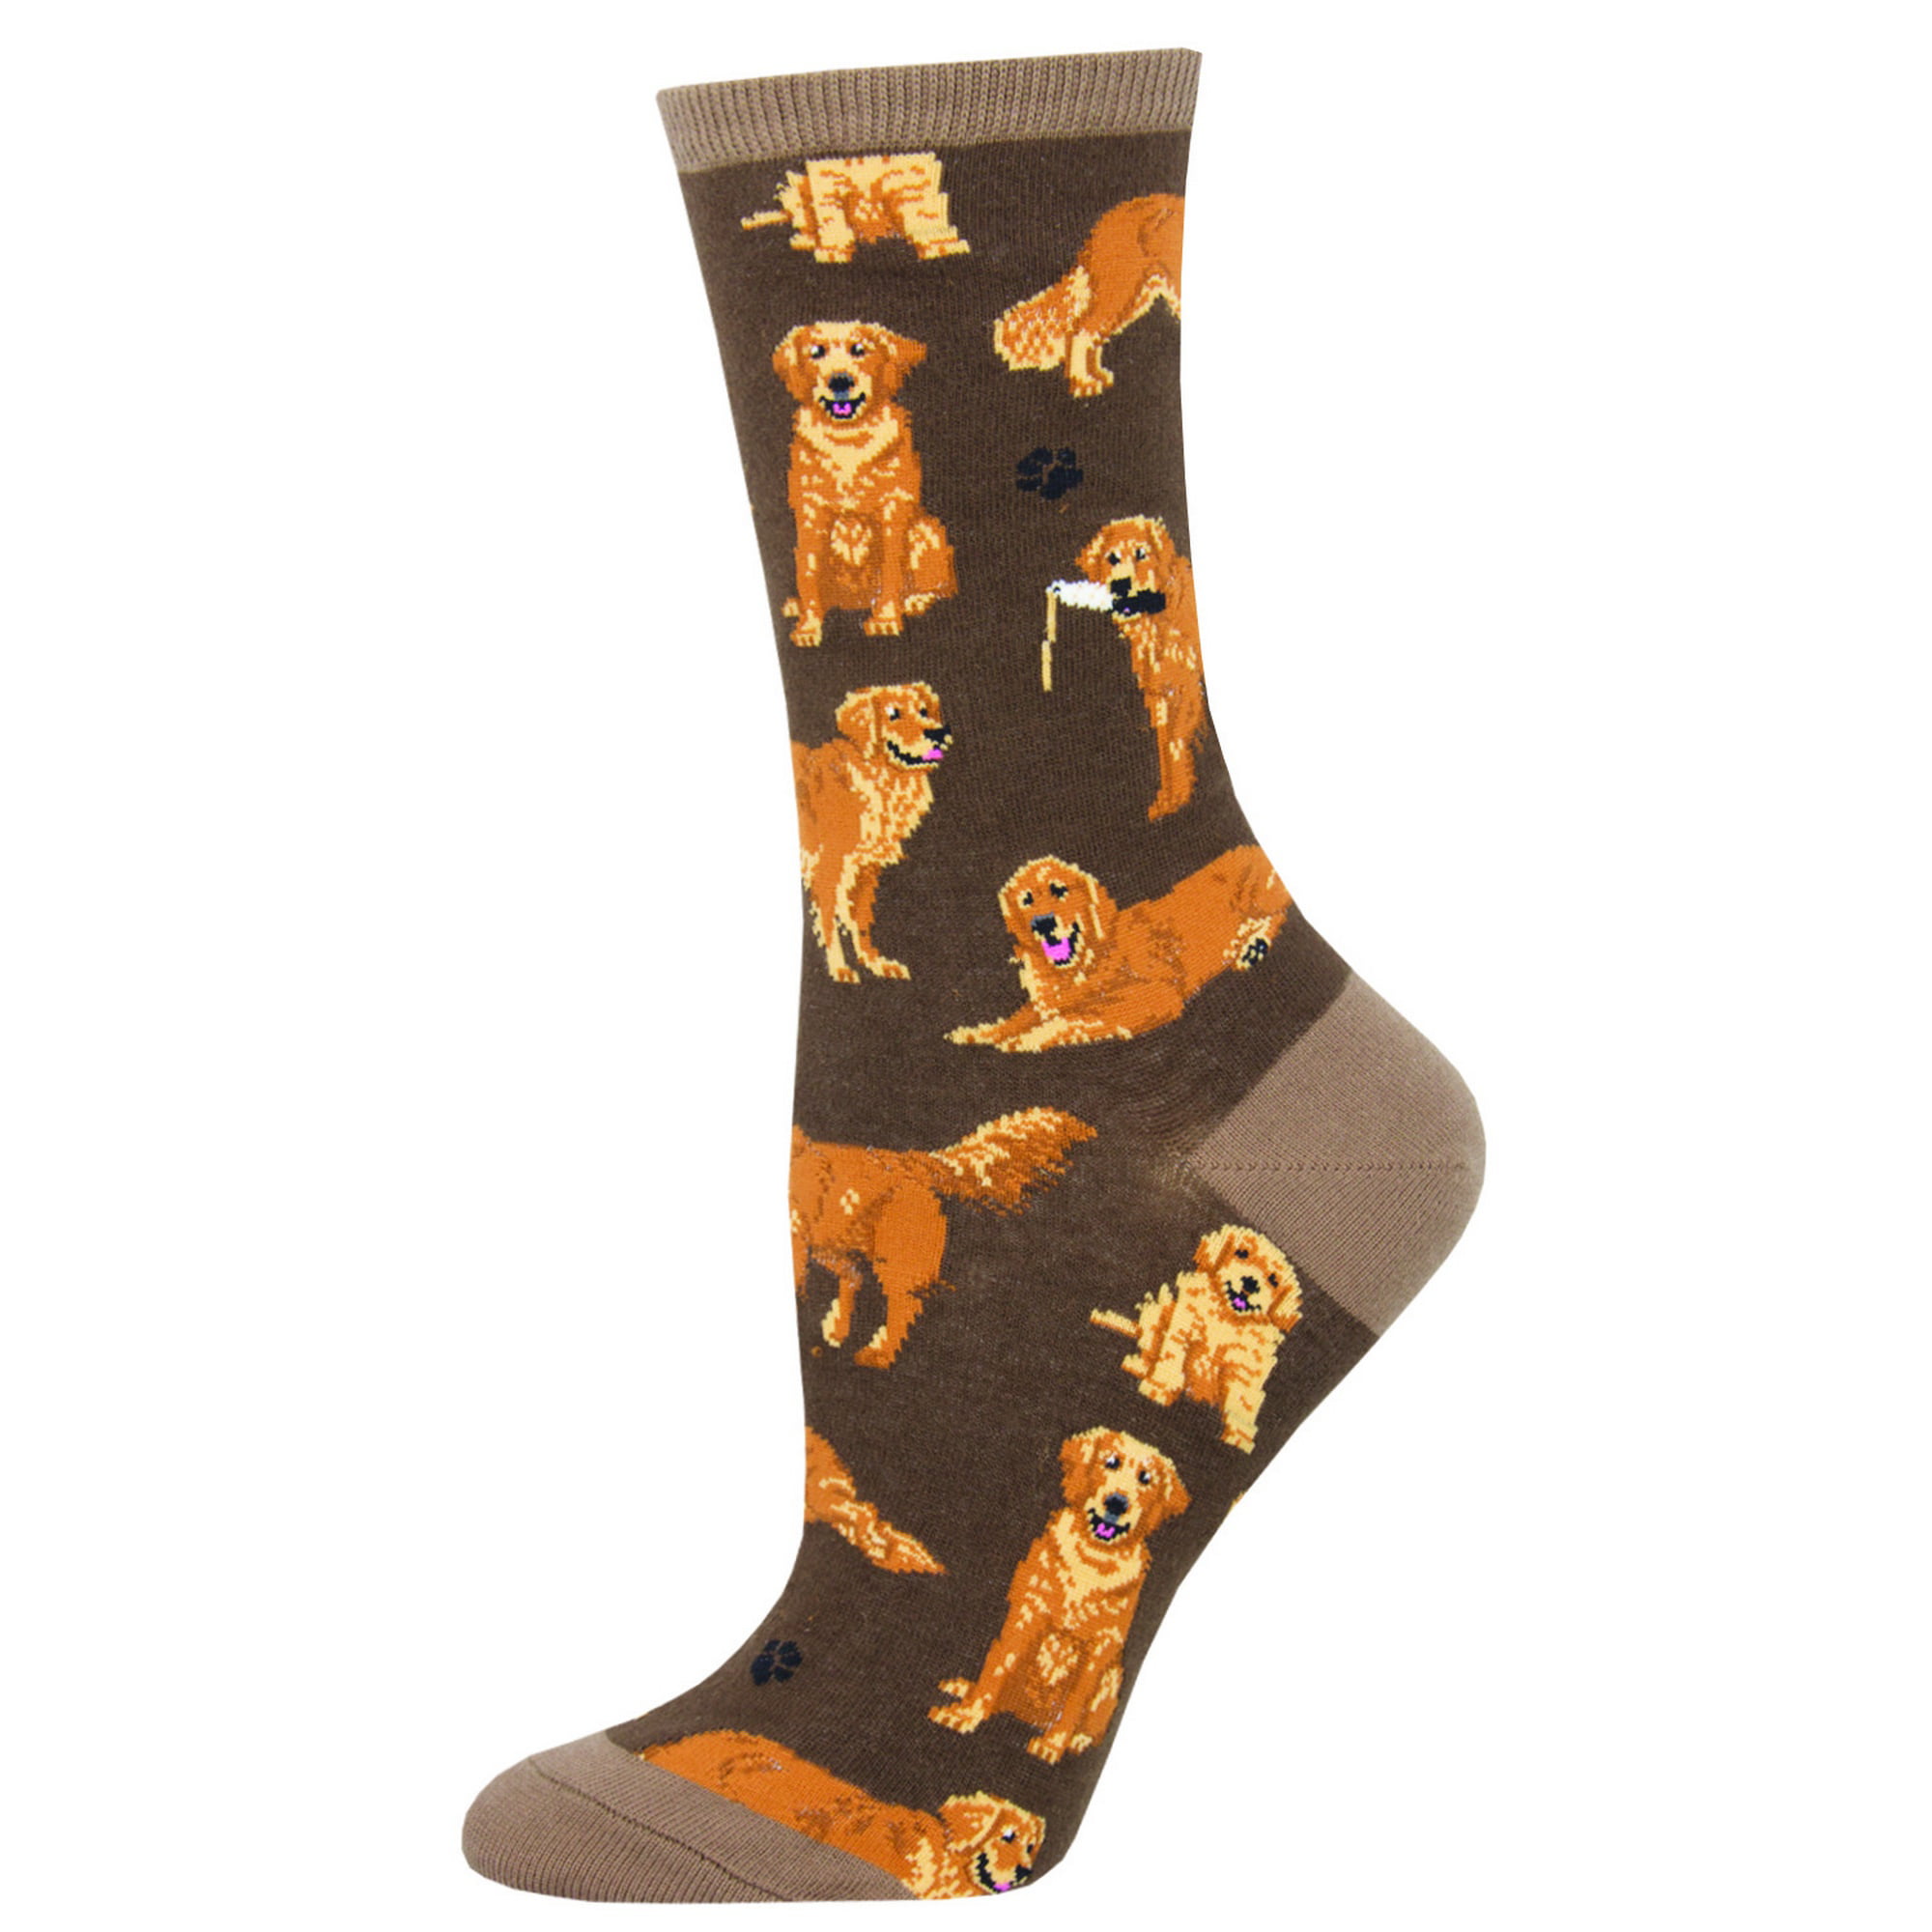 Casual Golden Retriever Dog Socks Cotton Dress Socks For Men Women 